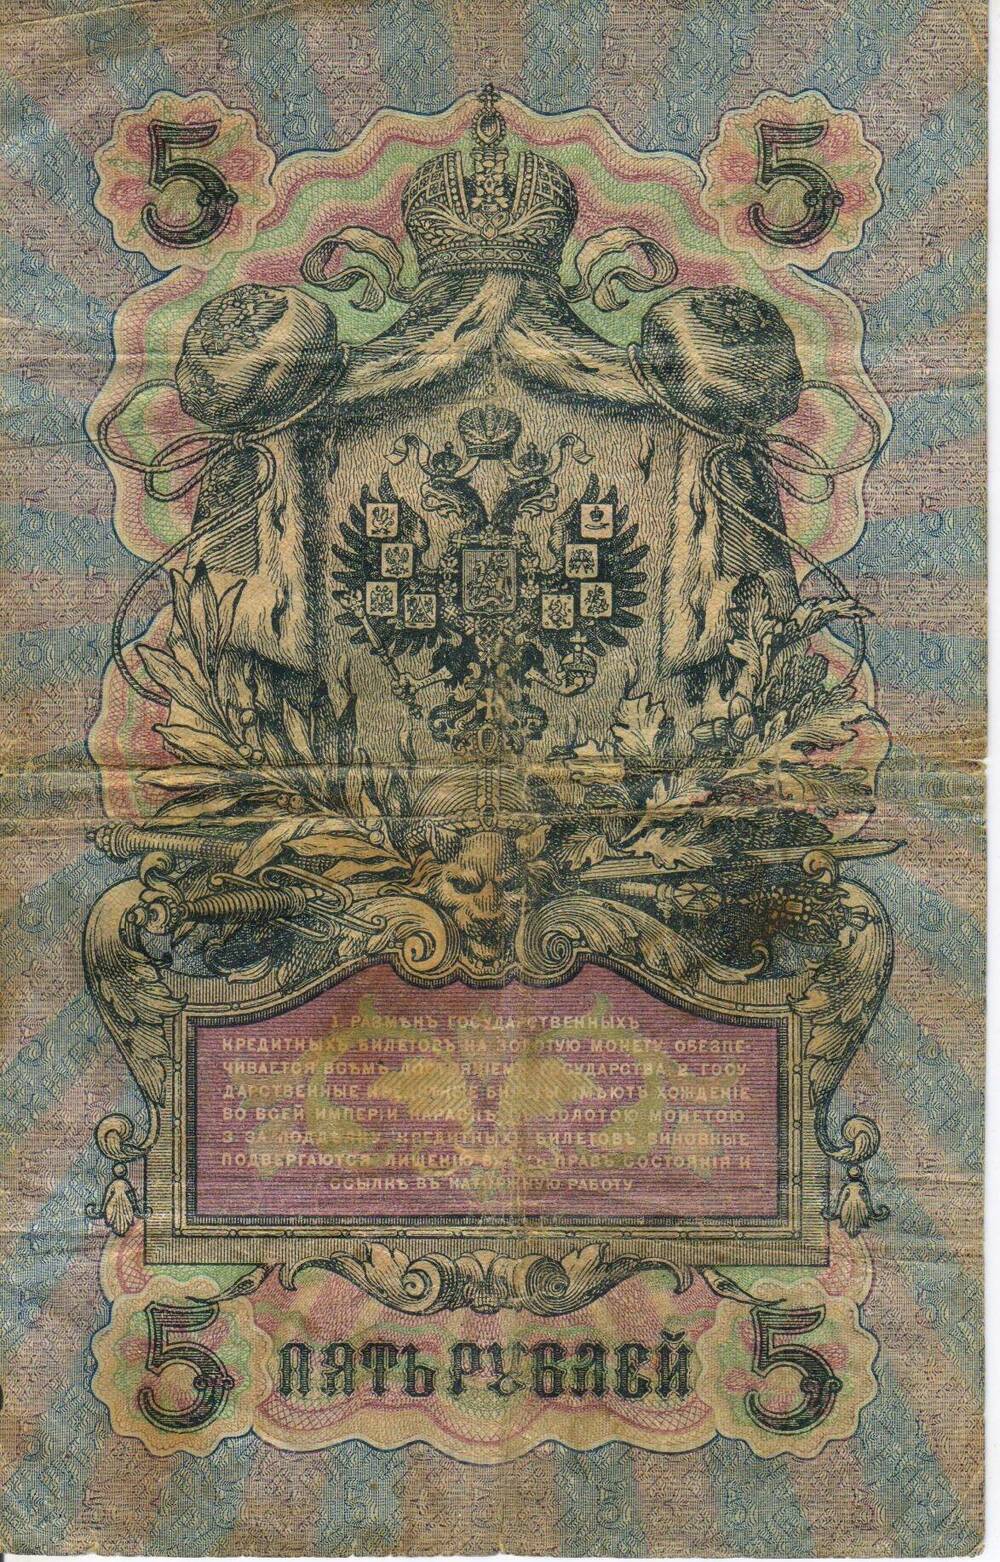 Банкнота России достоинством 5 рублей образца 1909 года серия РГ № 418214.